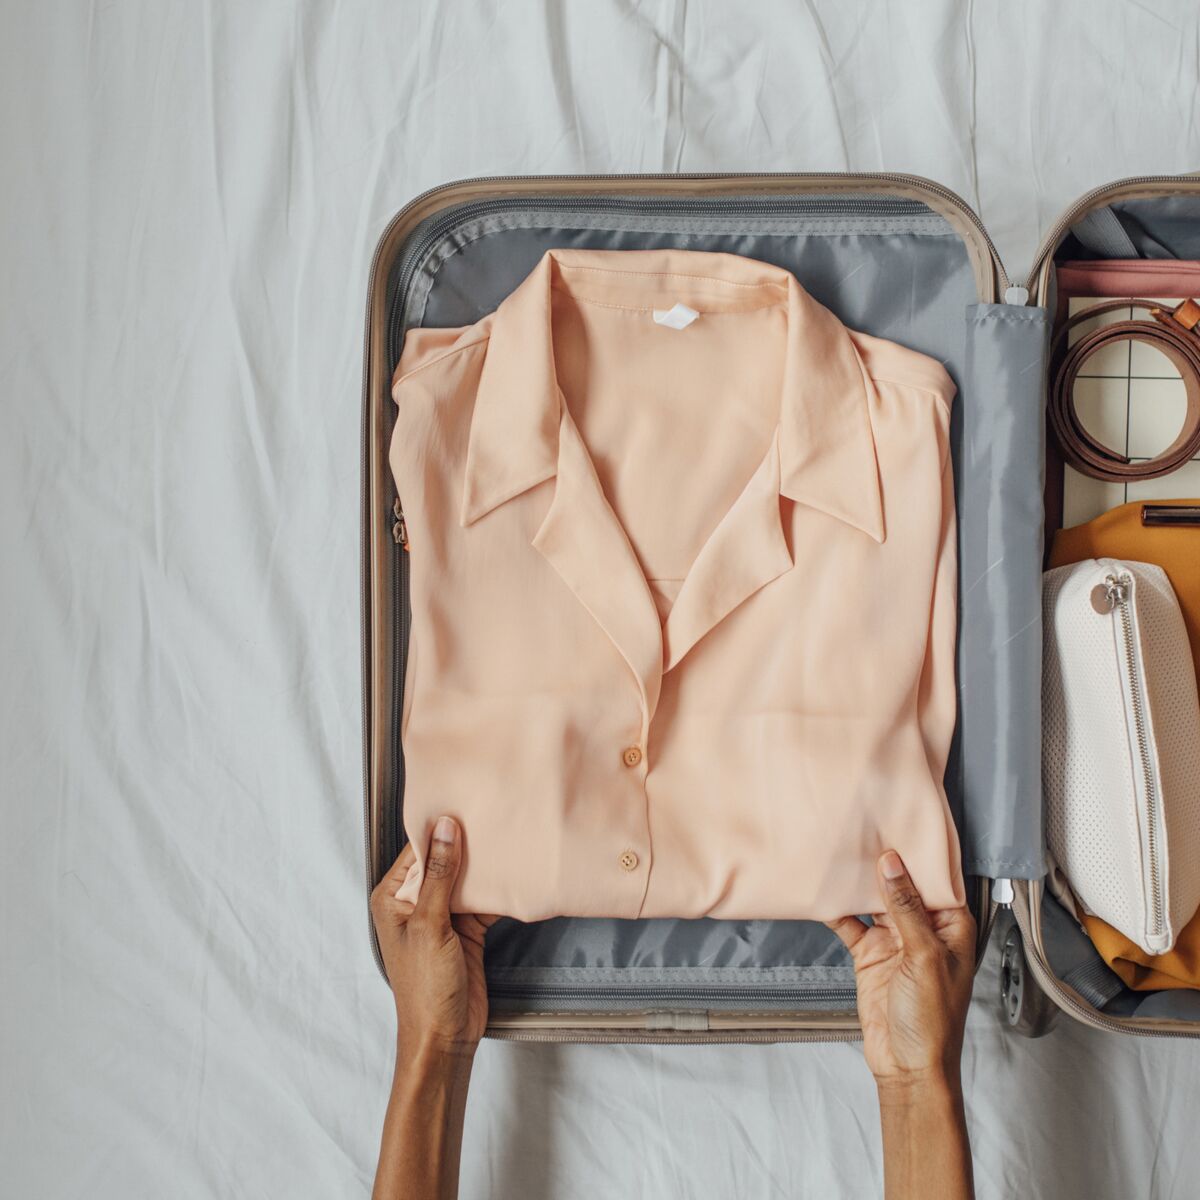 Comment bien faire sa valise? - Consultante en rangement Ledicia- Organisation